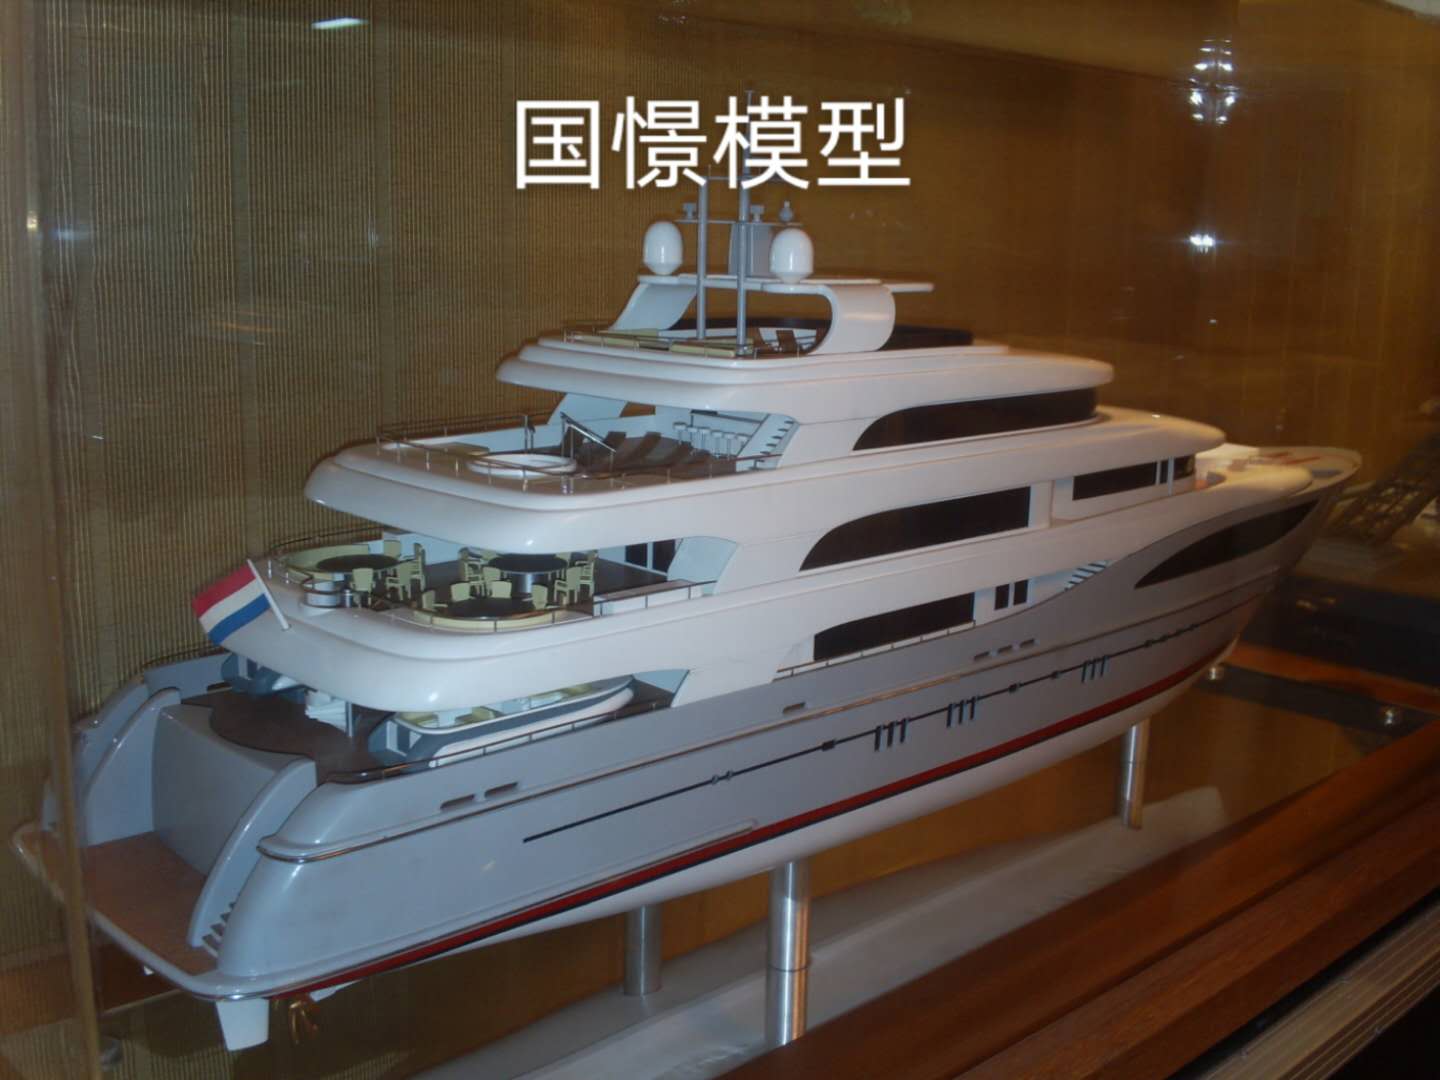 大安市船舶模型